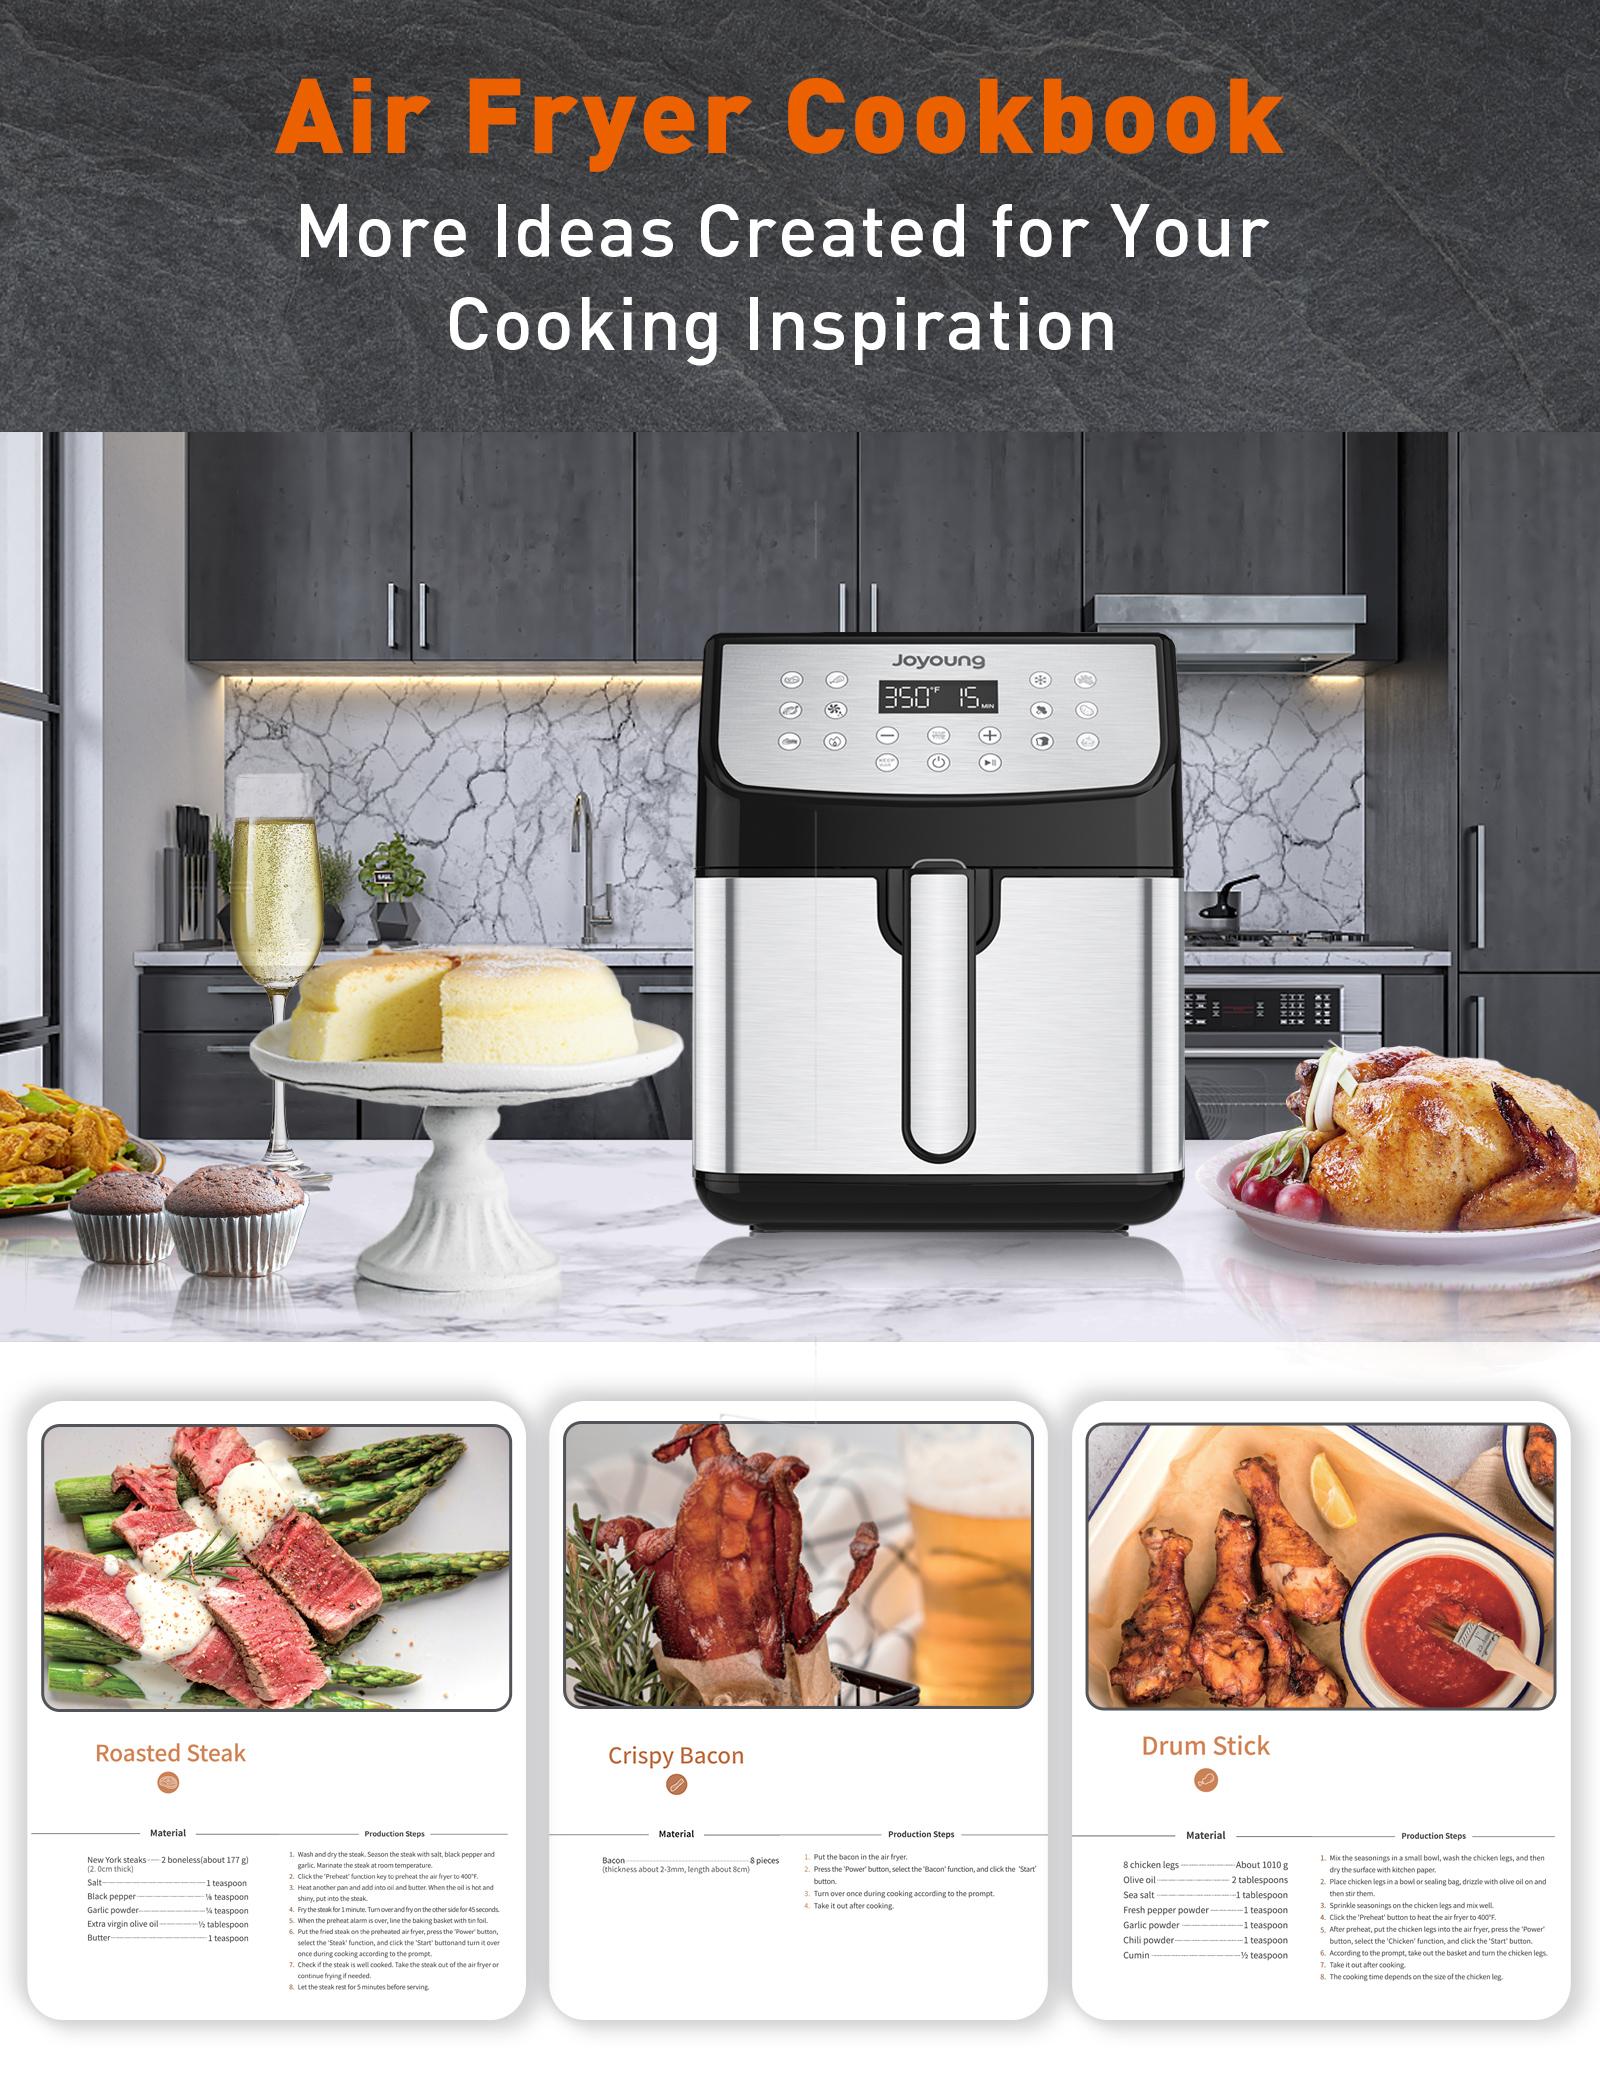 JOYOUNG Air Fryer 5.8 Quart Air Fryer Customizable Smart Cooking Programs 13-in-1 Digital Touchscreen Non-Stick Air Fryer Basket